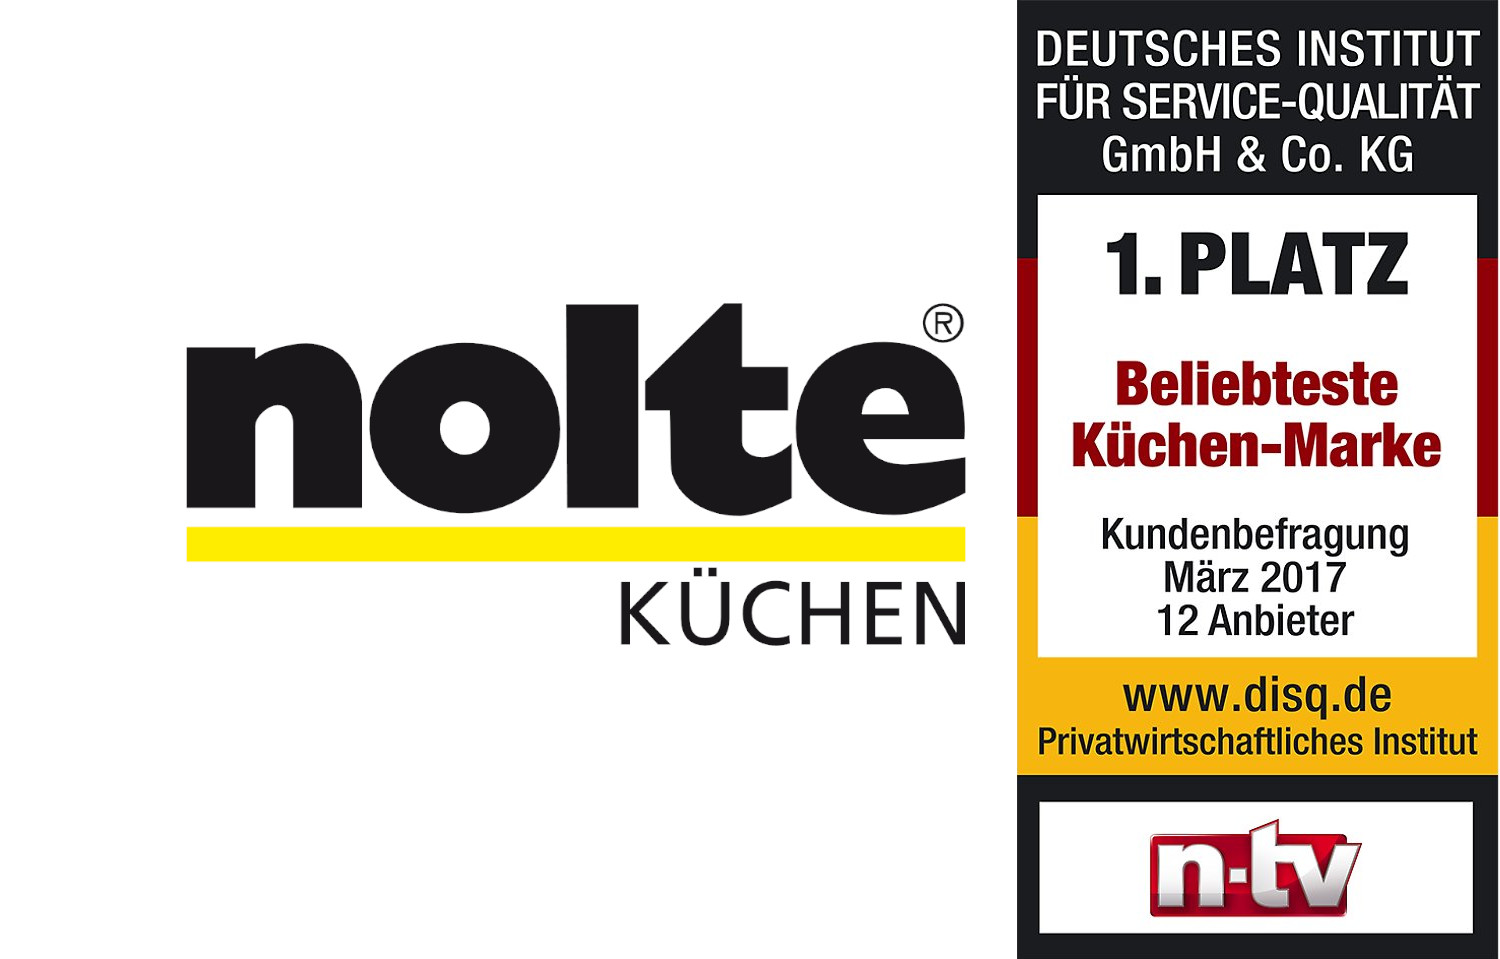 Kundenbefragung ergab: Nolte Küchen ist die beliebteste Küchenmarke der Deutschen